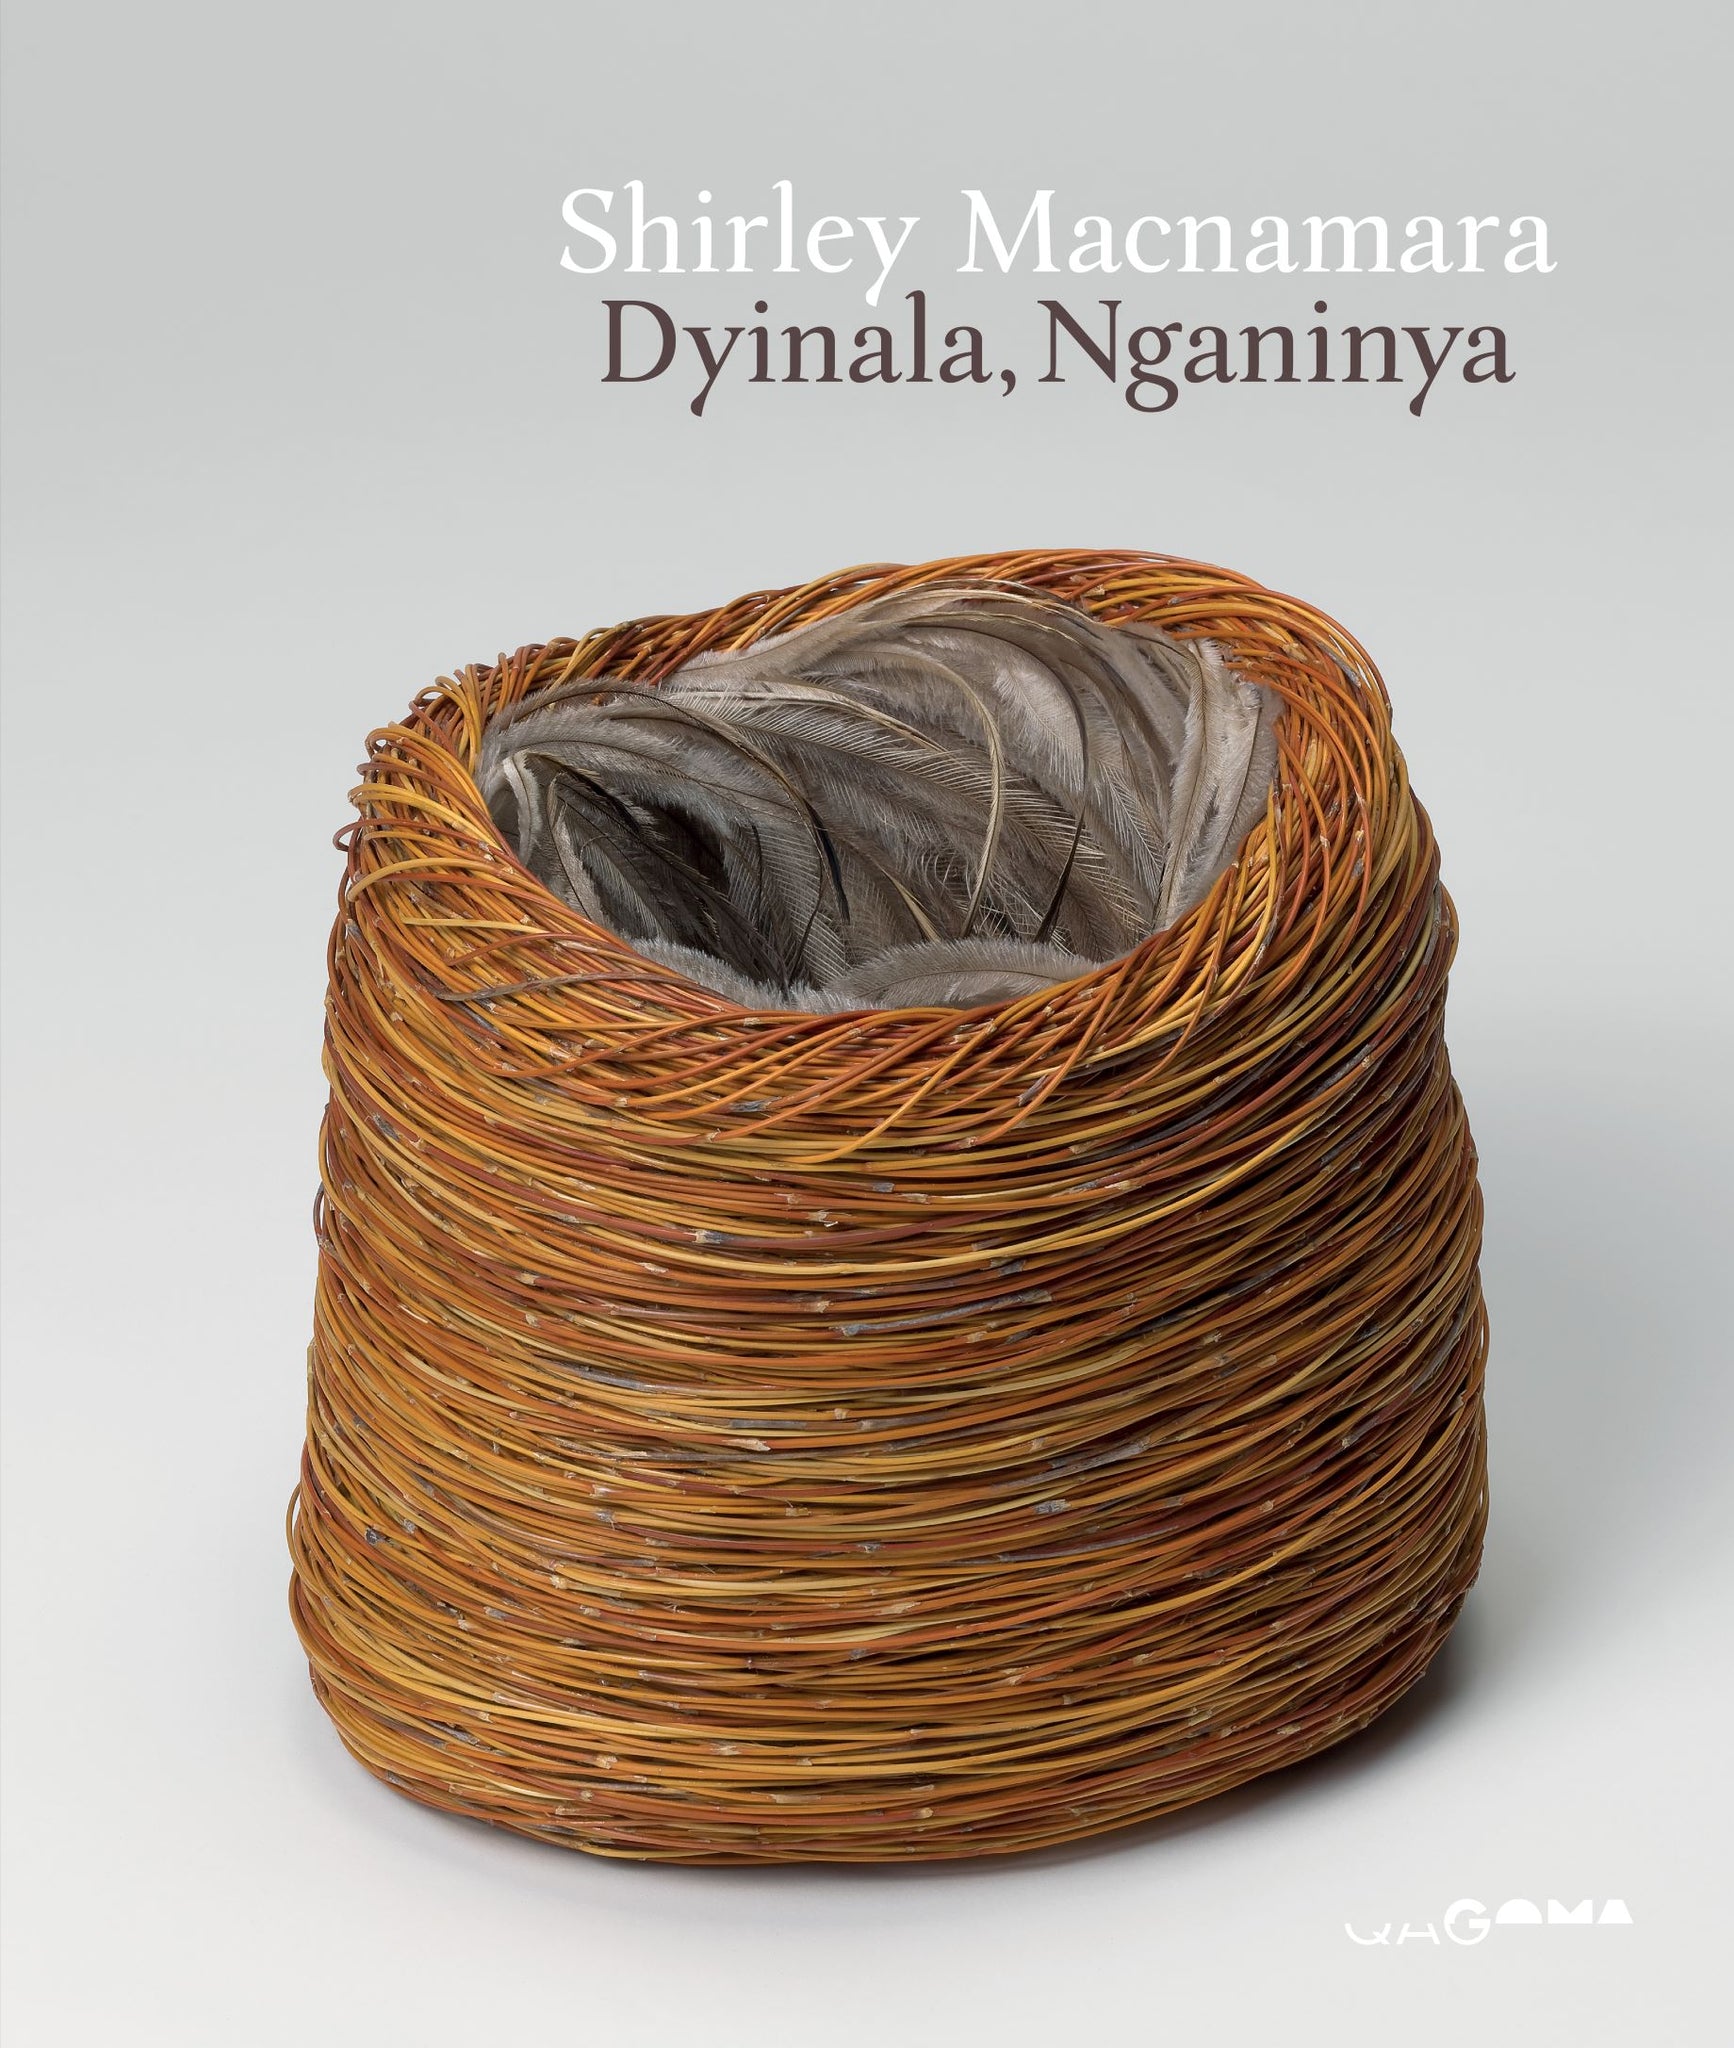 Shirley Macnamara: Dyinala, Nganinya